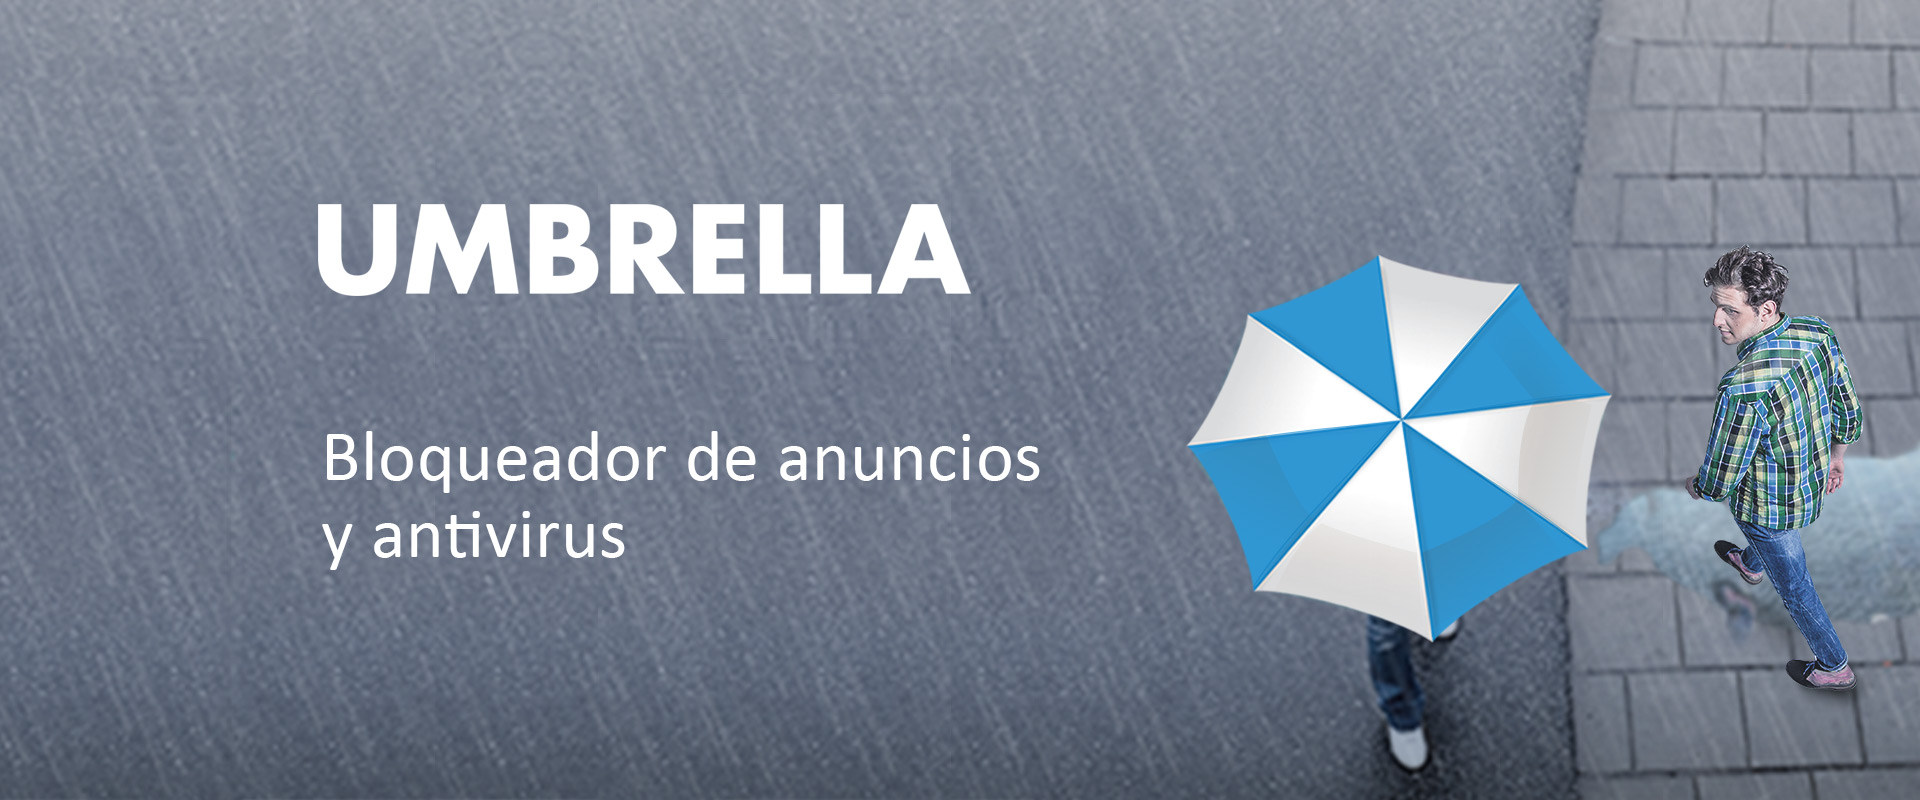 slide_app_umbrella_es